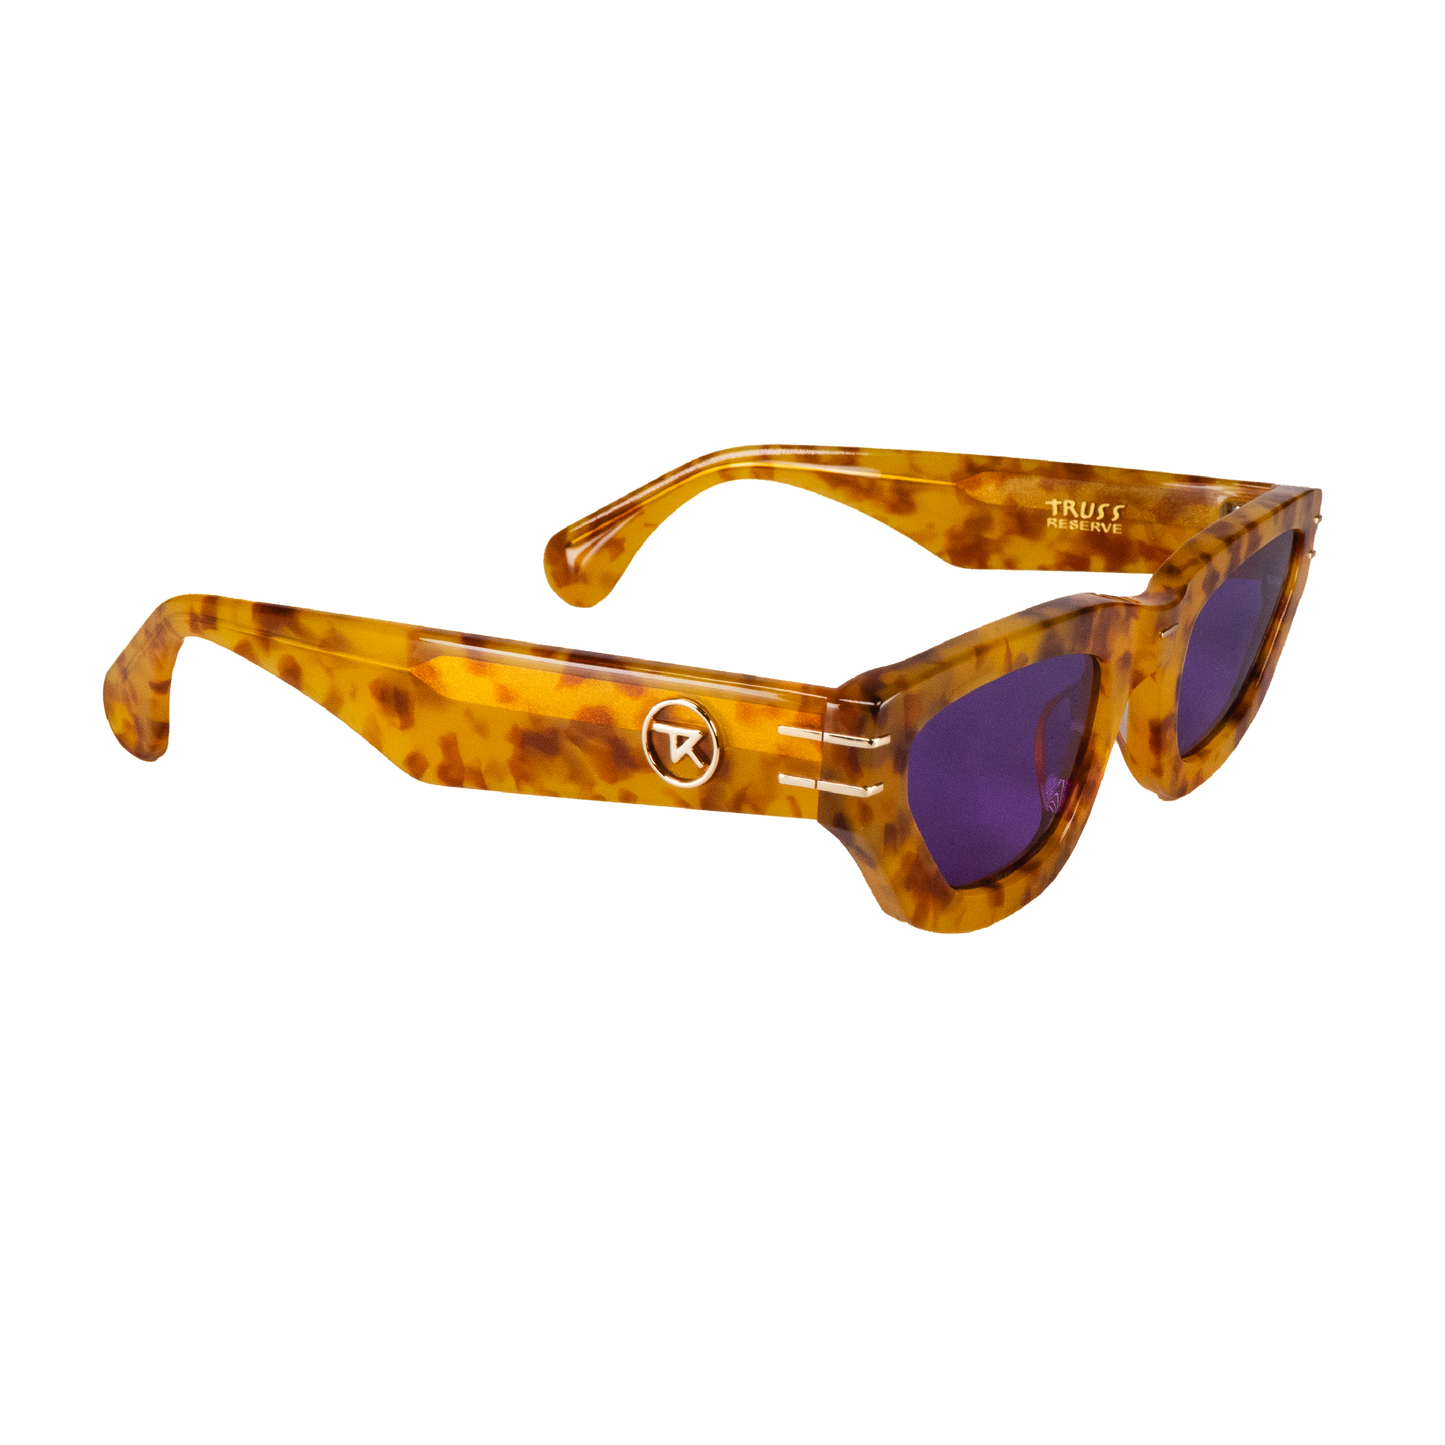 Marble Marlee Sunglasses